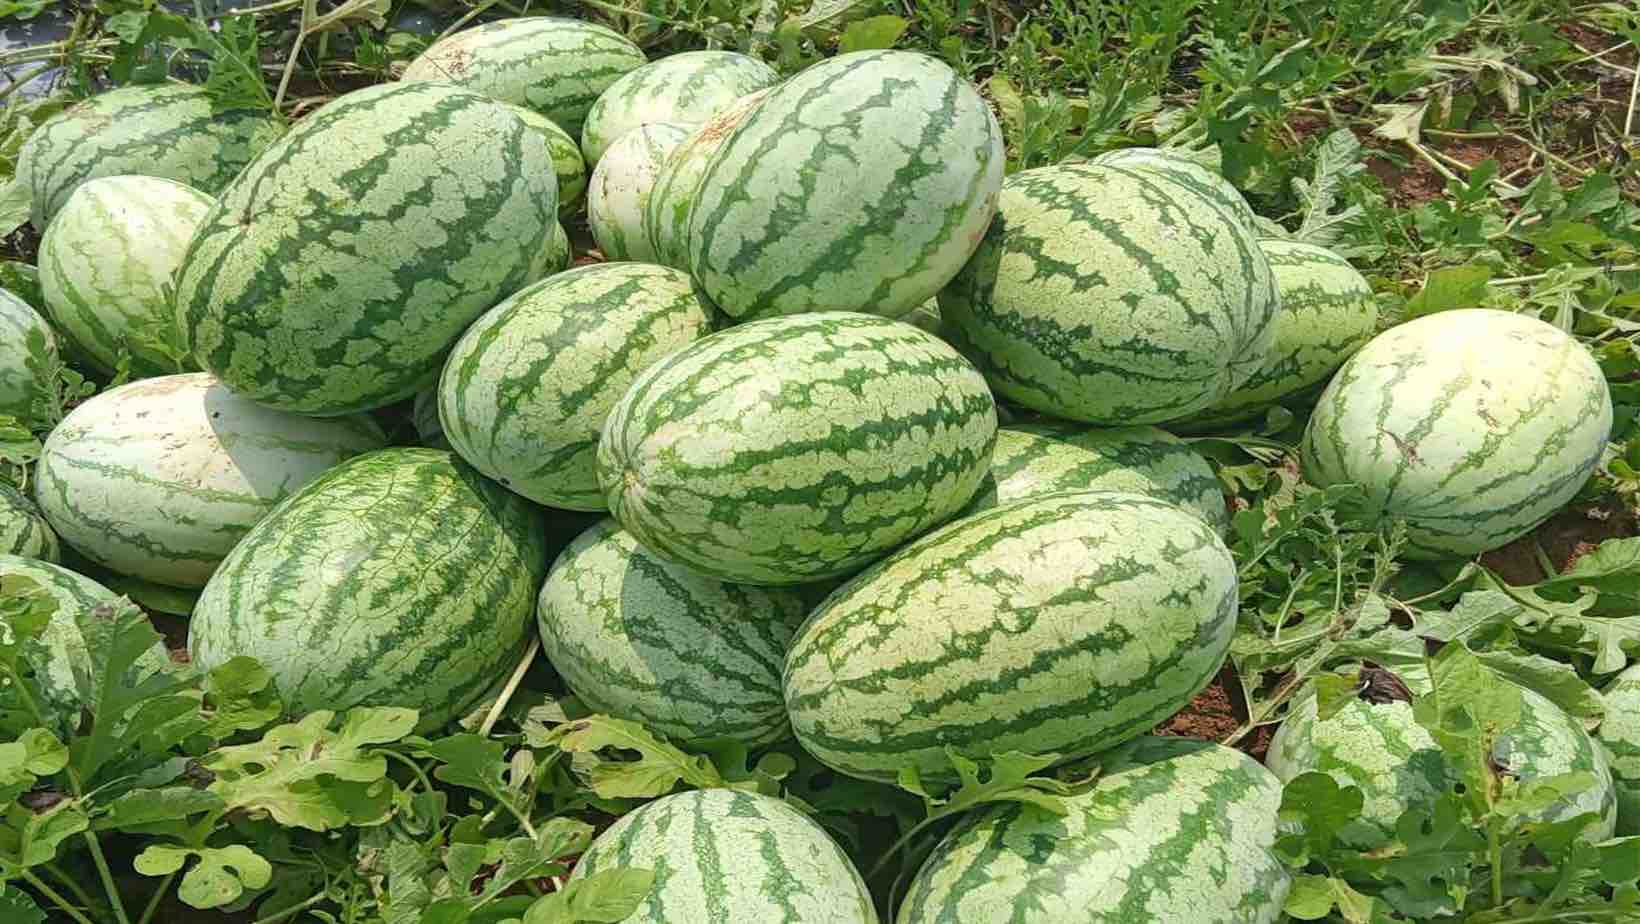 Watermelon variety